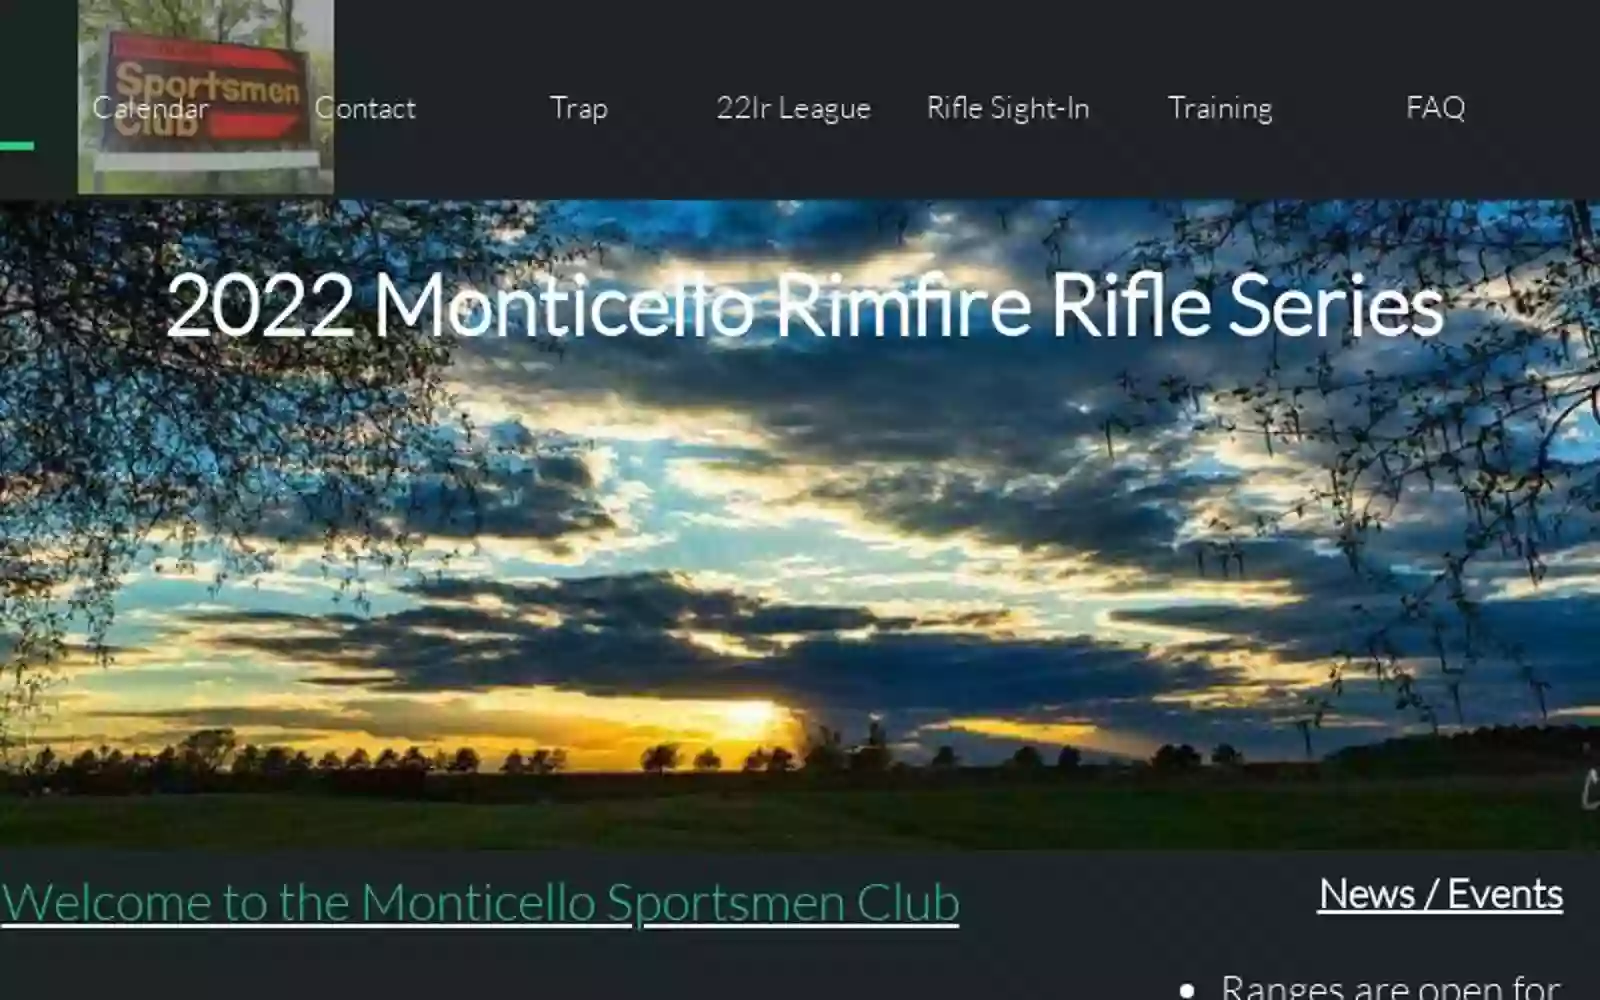 Monticello Sportsman Club